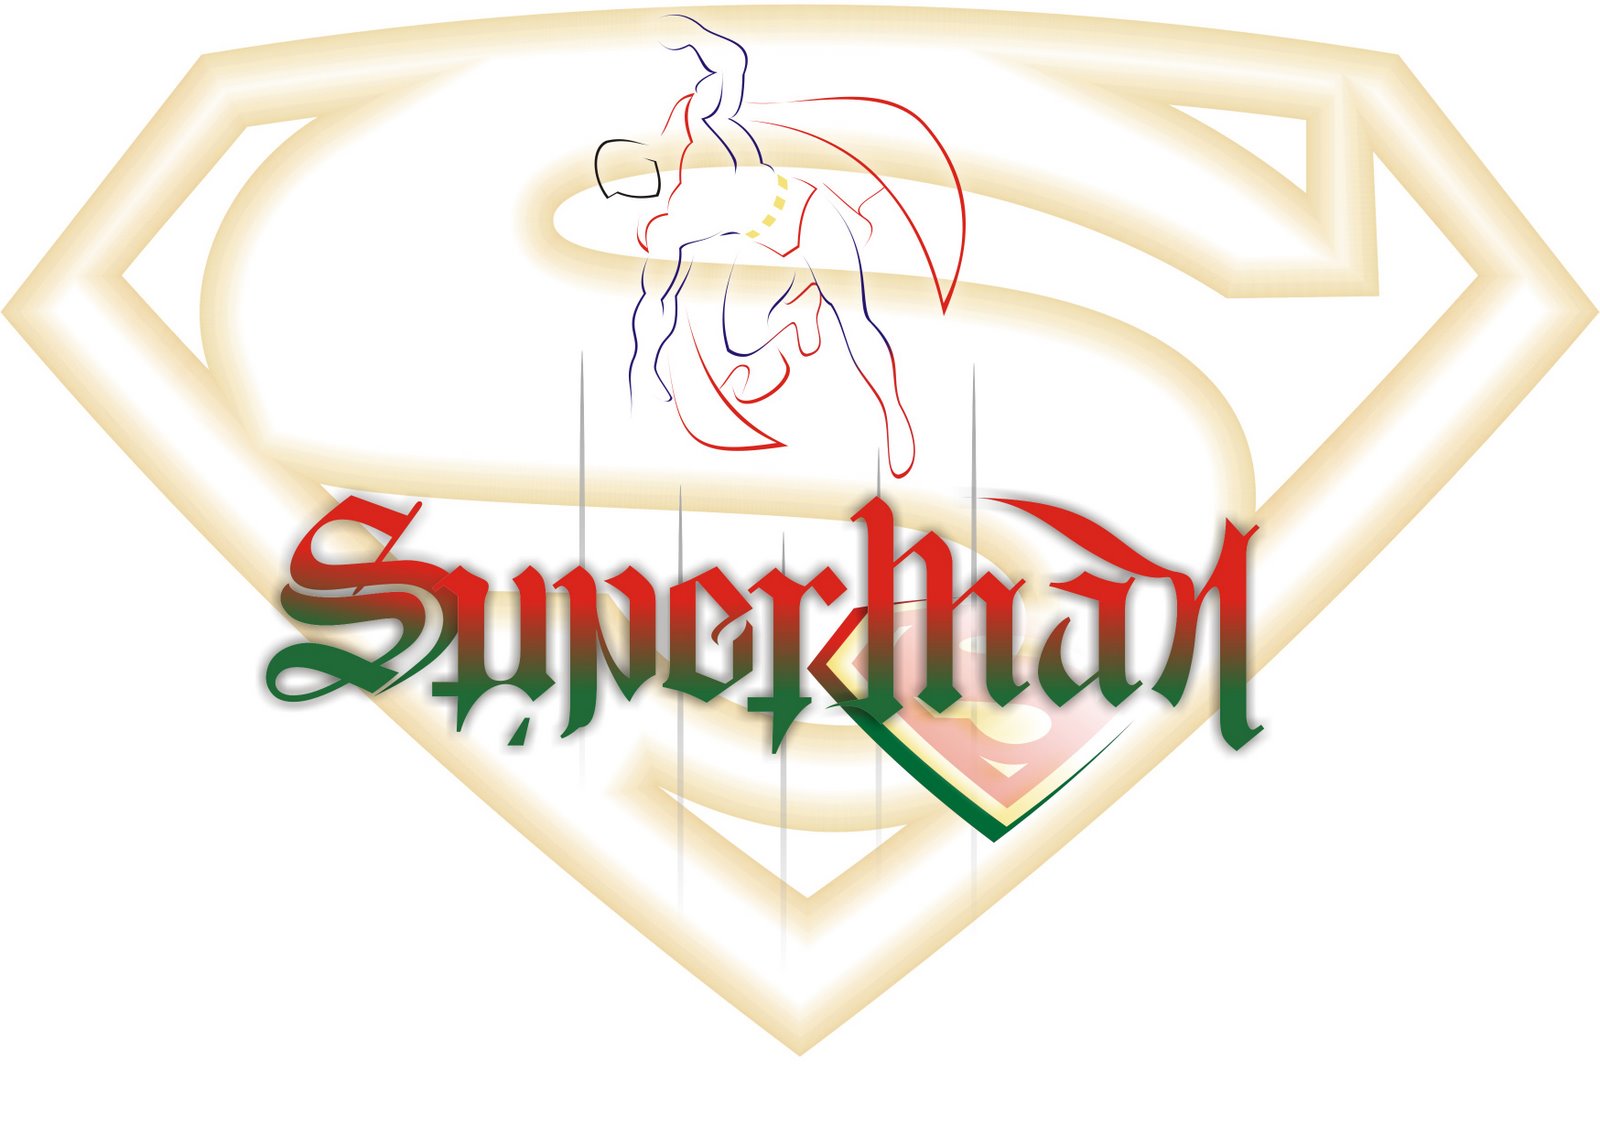 [superman-kryptonite.jpg]